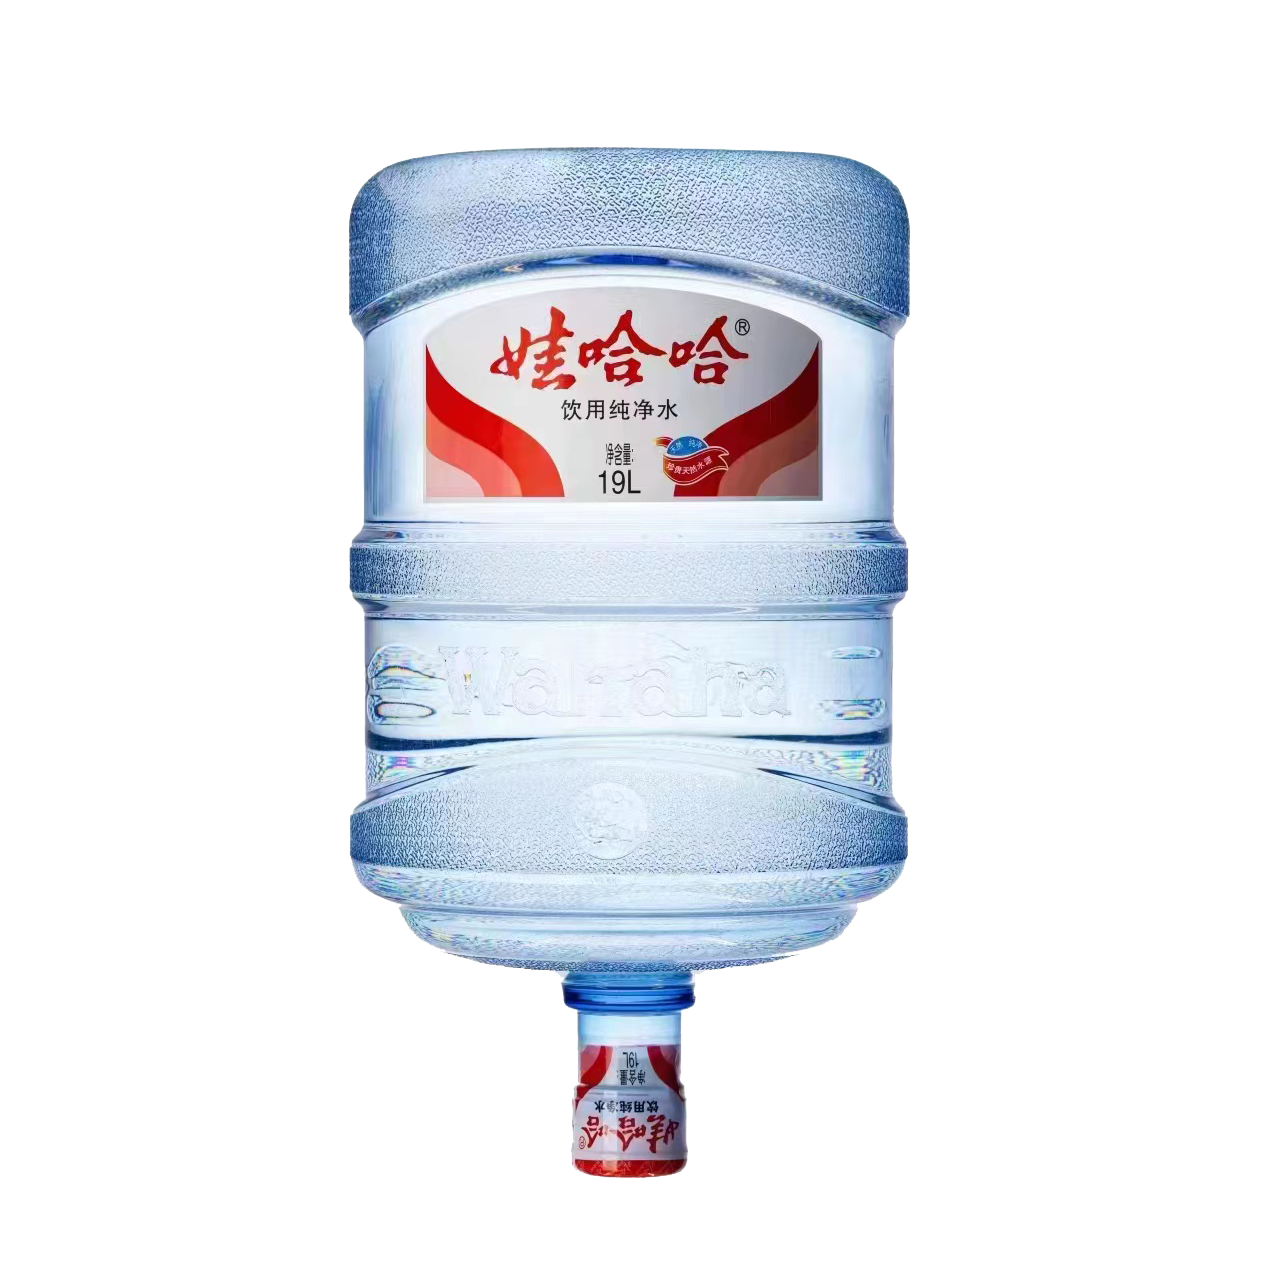 恒大®山泉15.8L桶装水 - 恒大桶装水-重庆官网